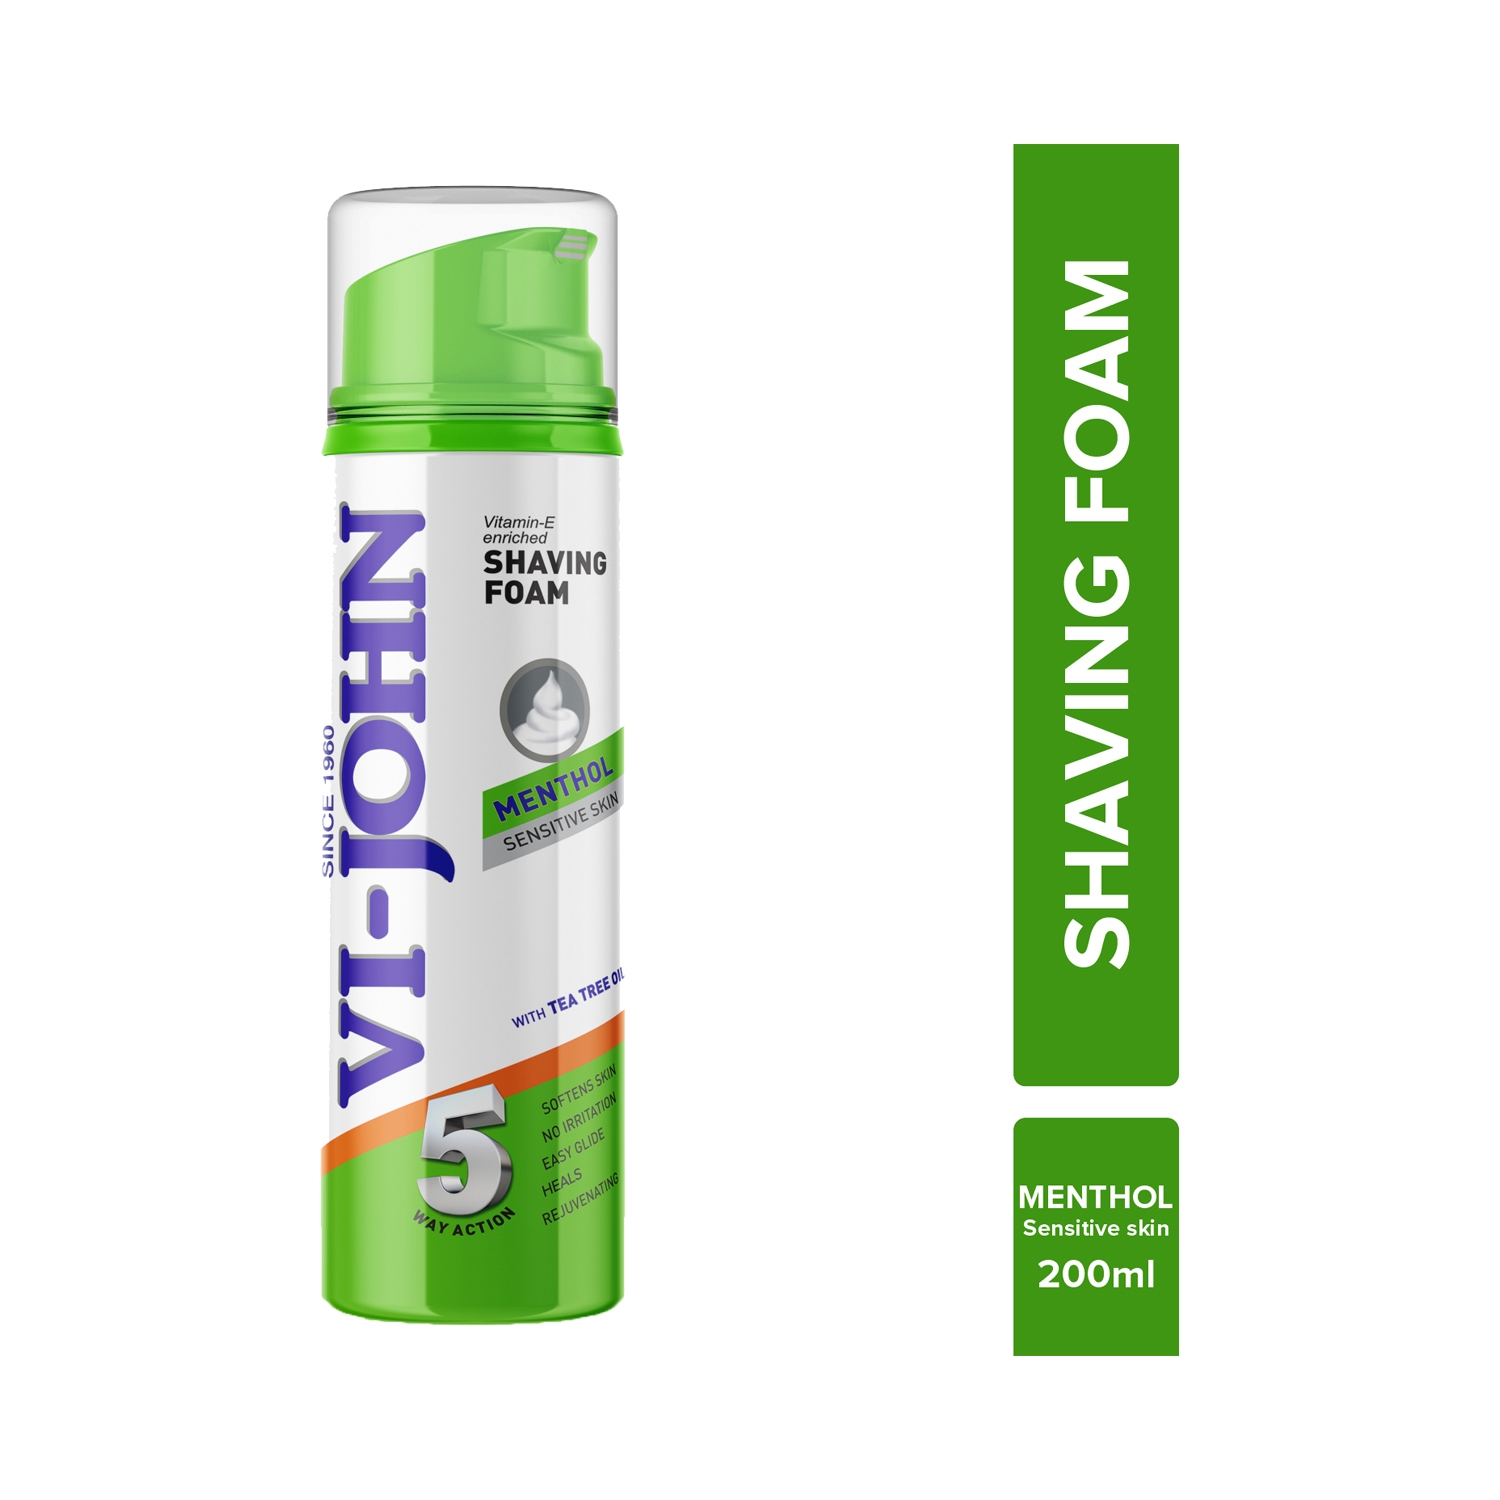 VI-JOHN | VI-JOHN 5 Way Action Shaving Foam Enriched With Vitamin E & Menthol For Sensitive Skin (200ml)